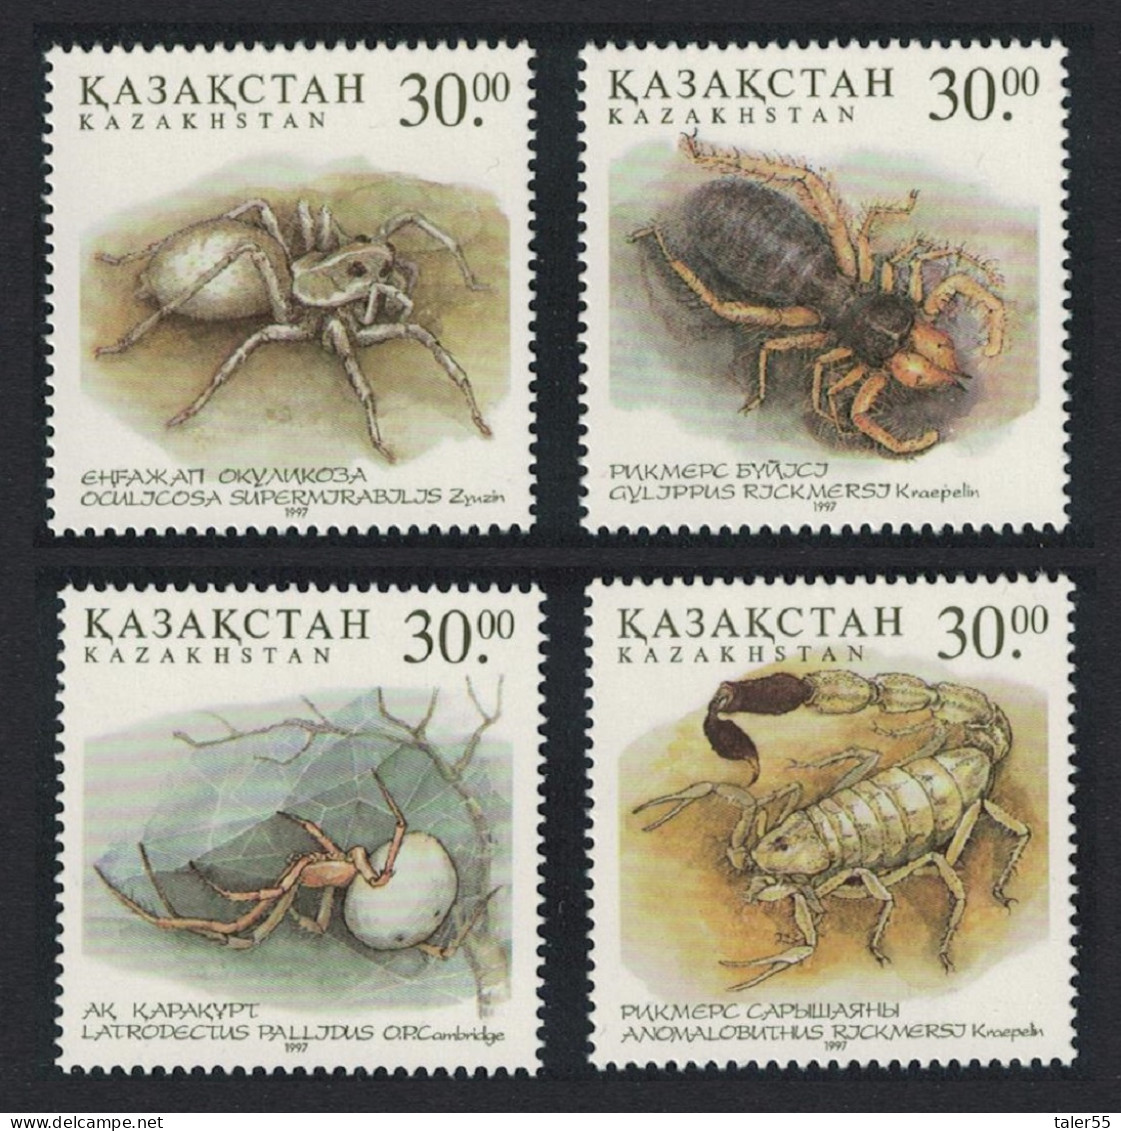 Kazakhstan Arachnidae Spiders 4v 1997 MNH SG#188-191 - Kazakhstan